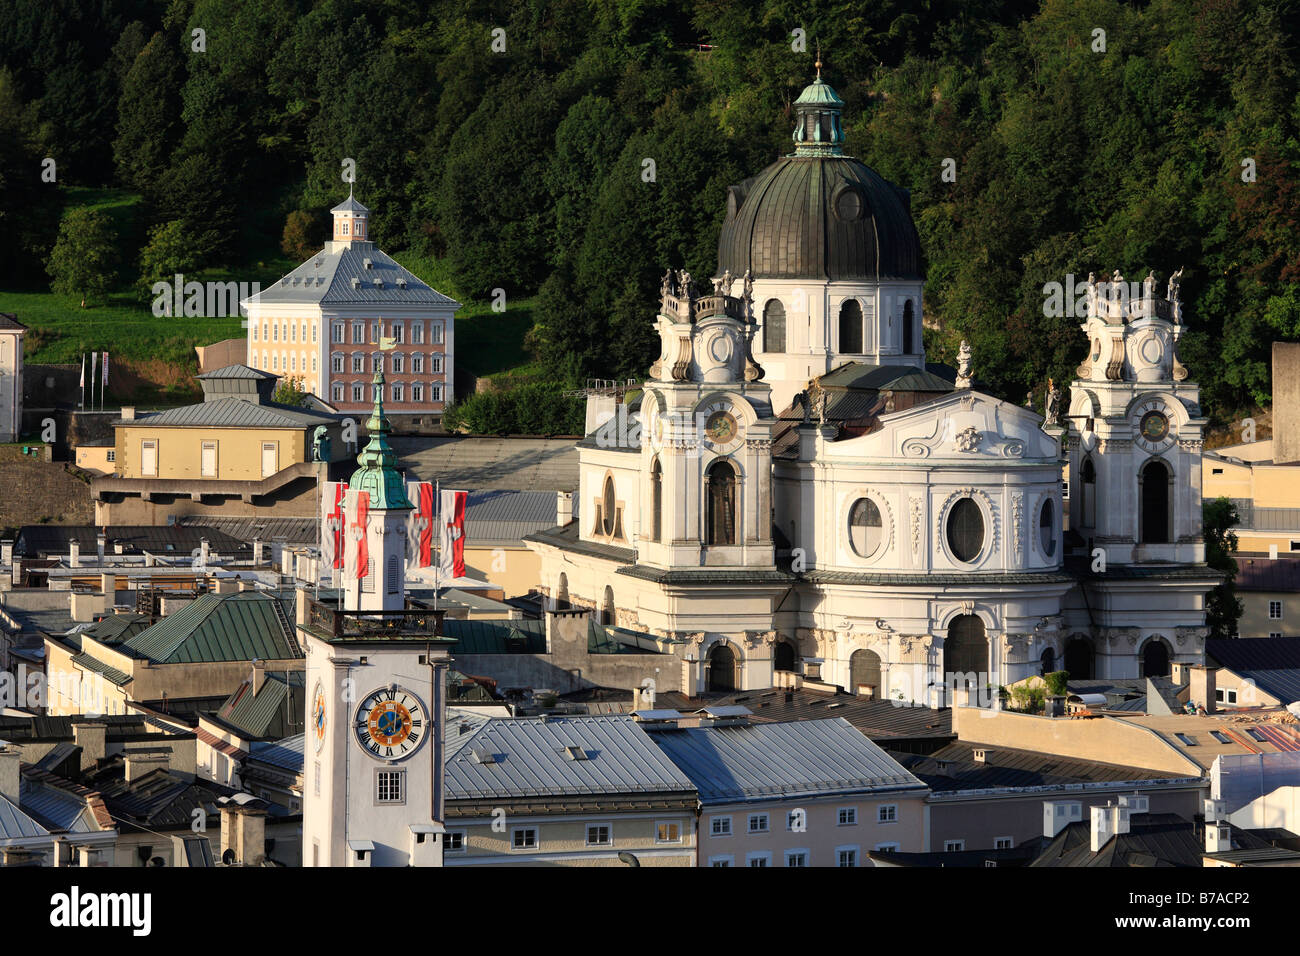 Historischen Stadtteil von Salzburg mit Rathausturm und Kollegienkirche Kirche, Universität Kirche, Österreich, Europa Stockfoto